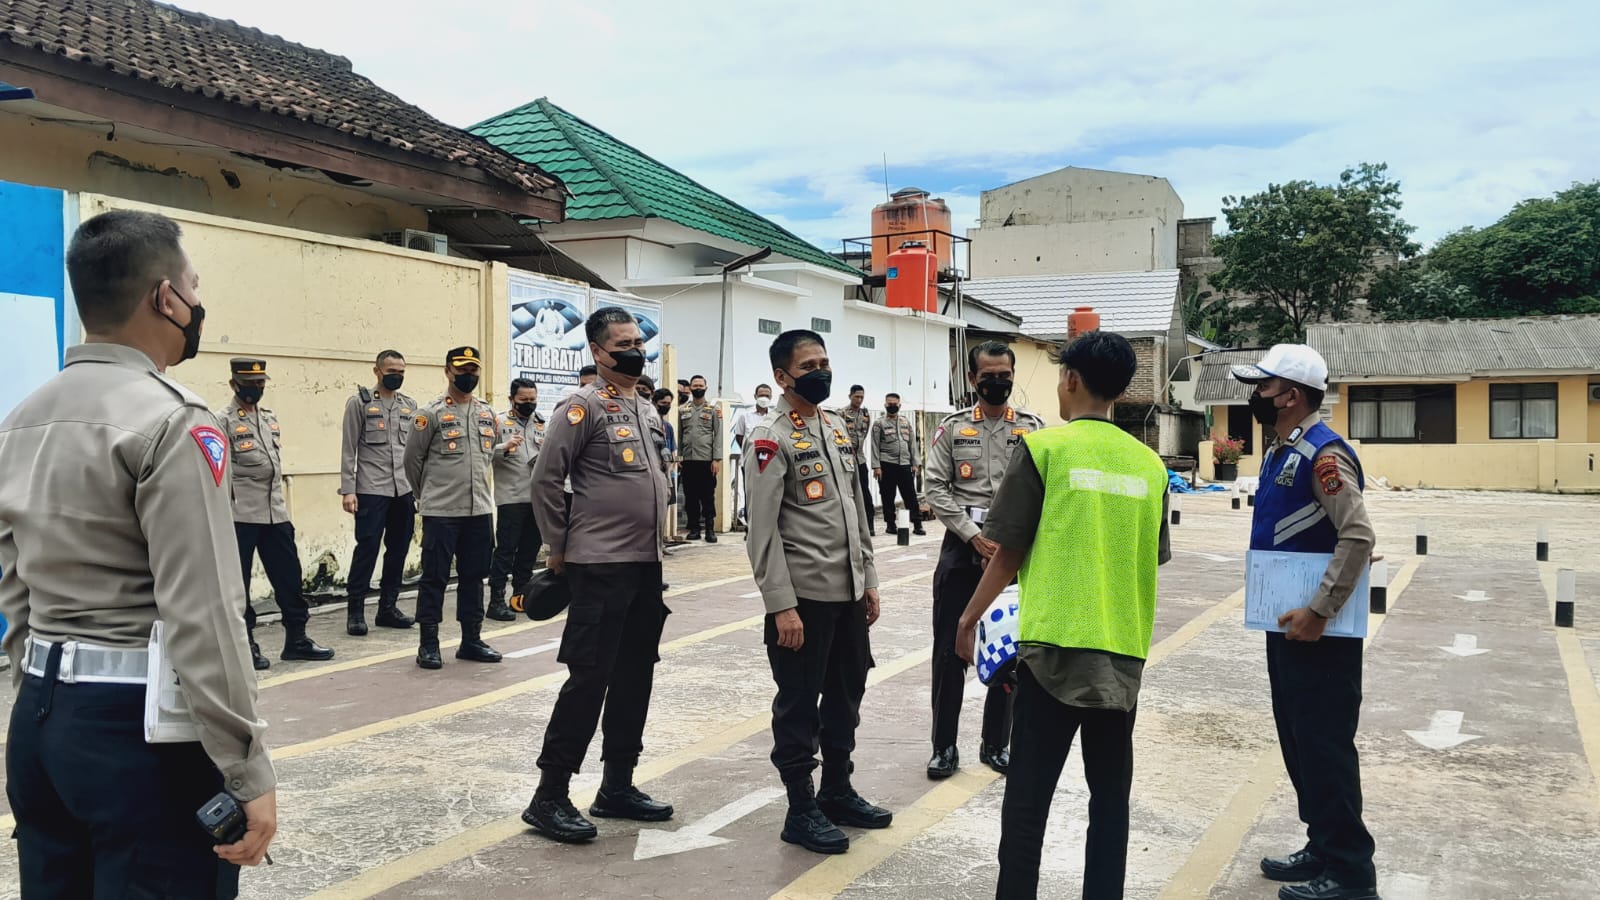 Kapolda Lampung Sidak Pelaksanaan Ujian Praktek SIM di Polres Pringsewu